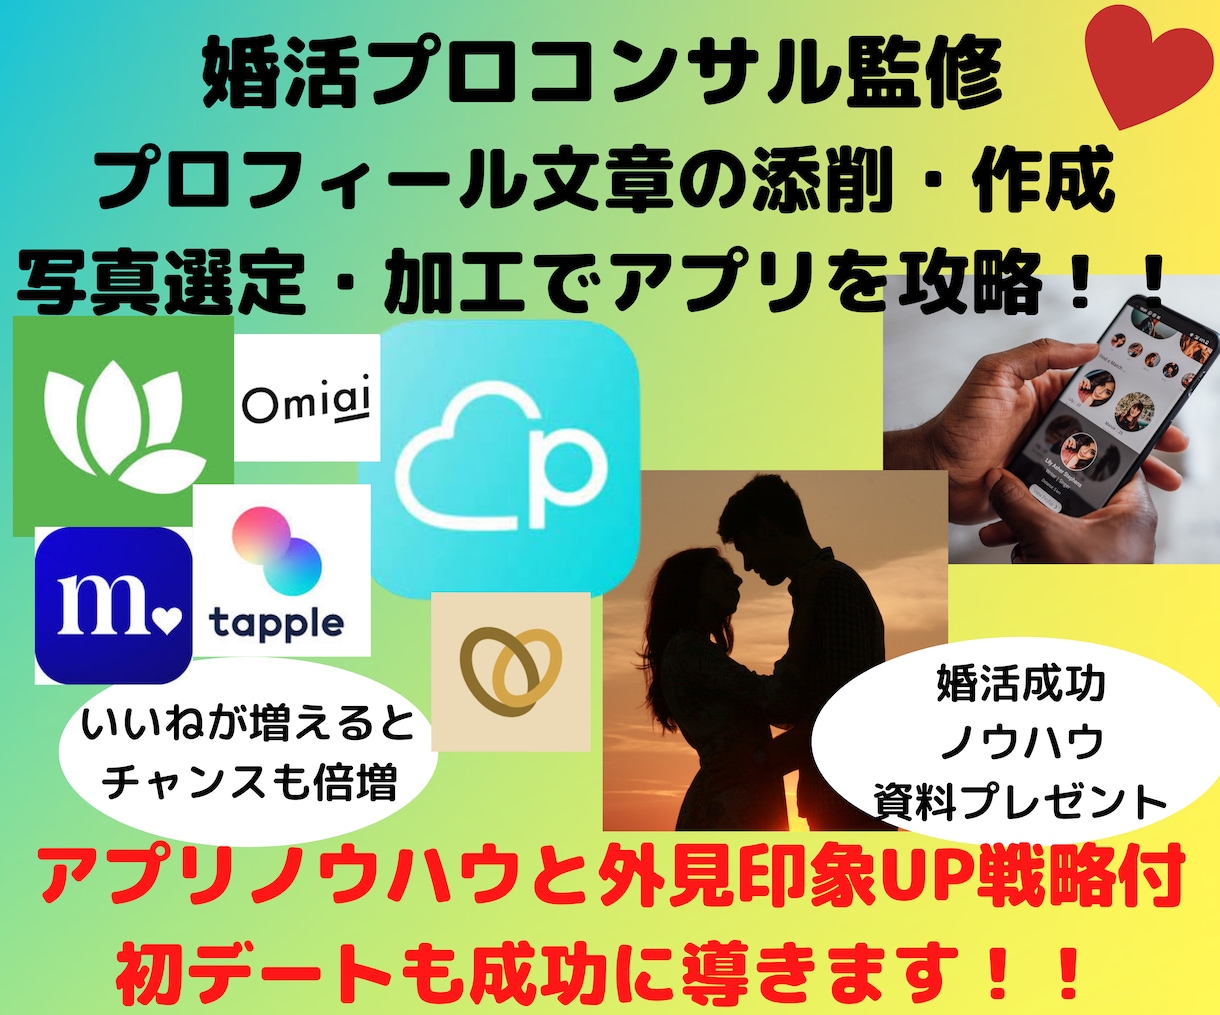 💬Coconara｜Matching app profile writing and photo processing Minami Aoyama image improvement consulting Ishinuma 5.0…